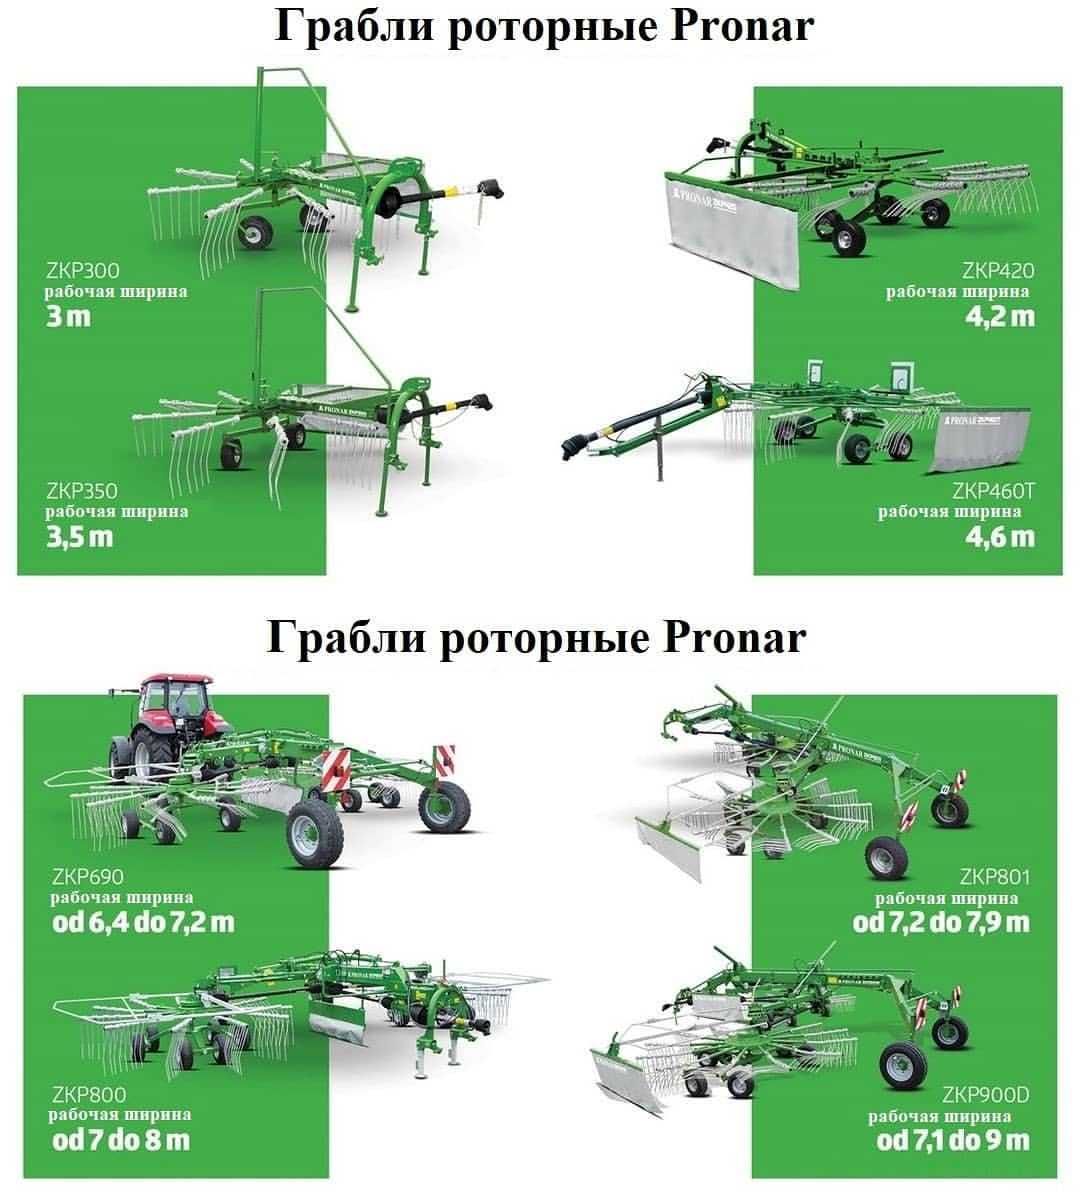 Грабли роторные одна- и двух- карусельные  польского завода PRONAR